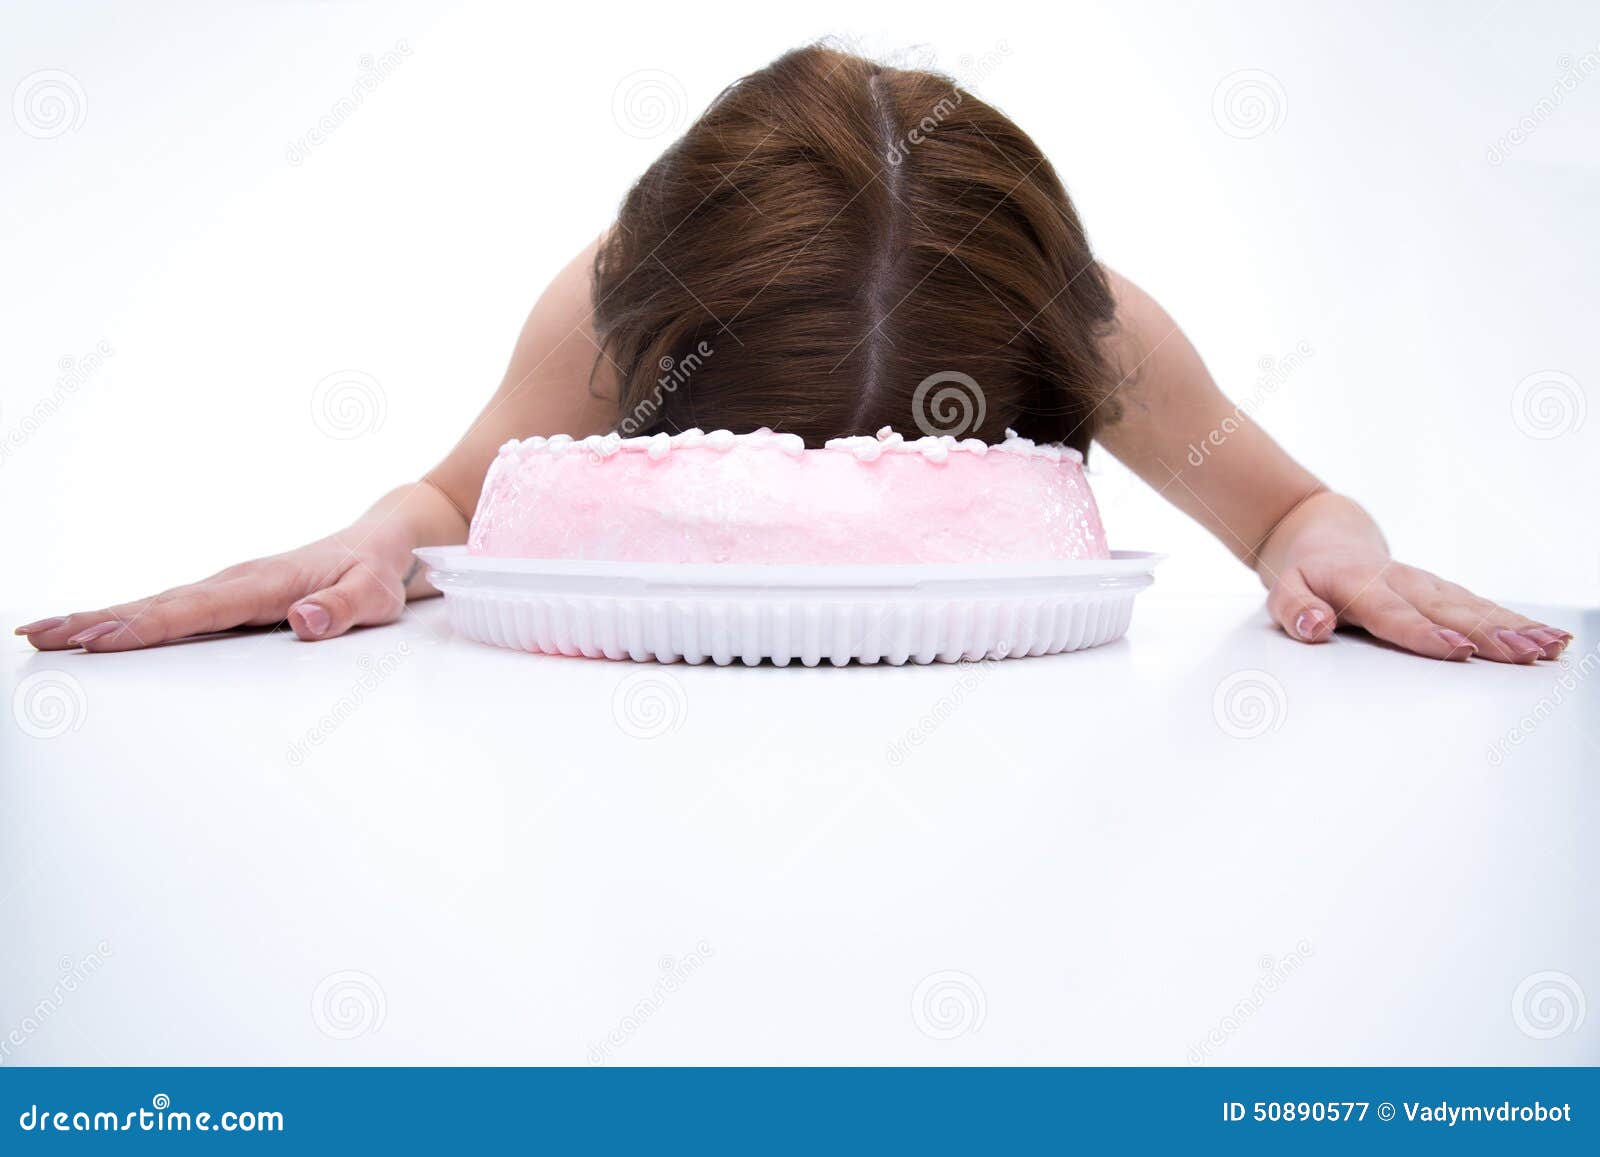 Девушку ткнули лицом в торт штырь